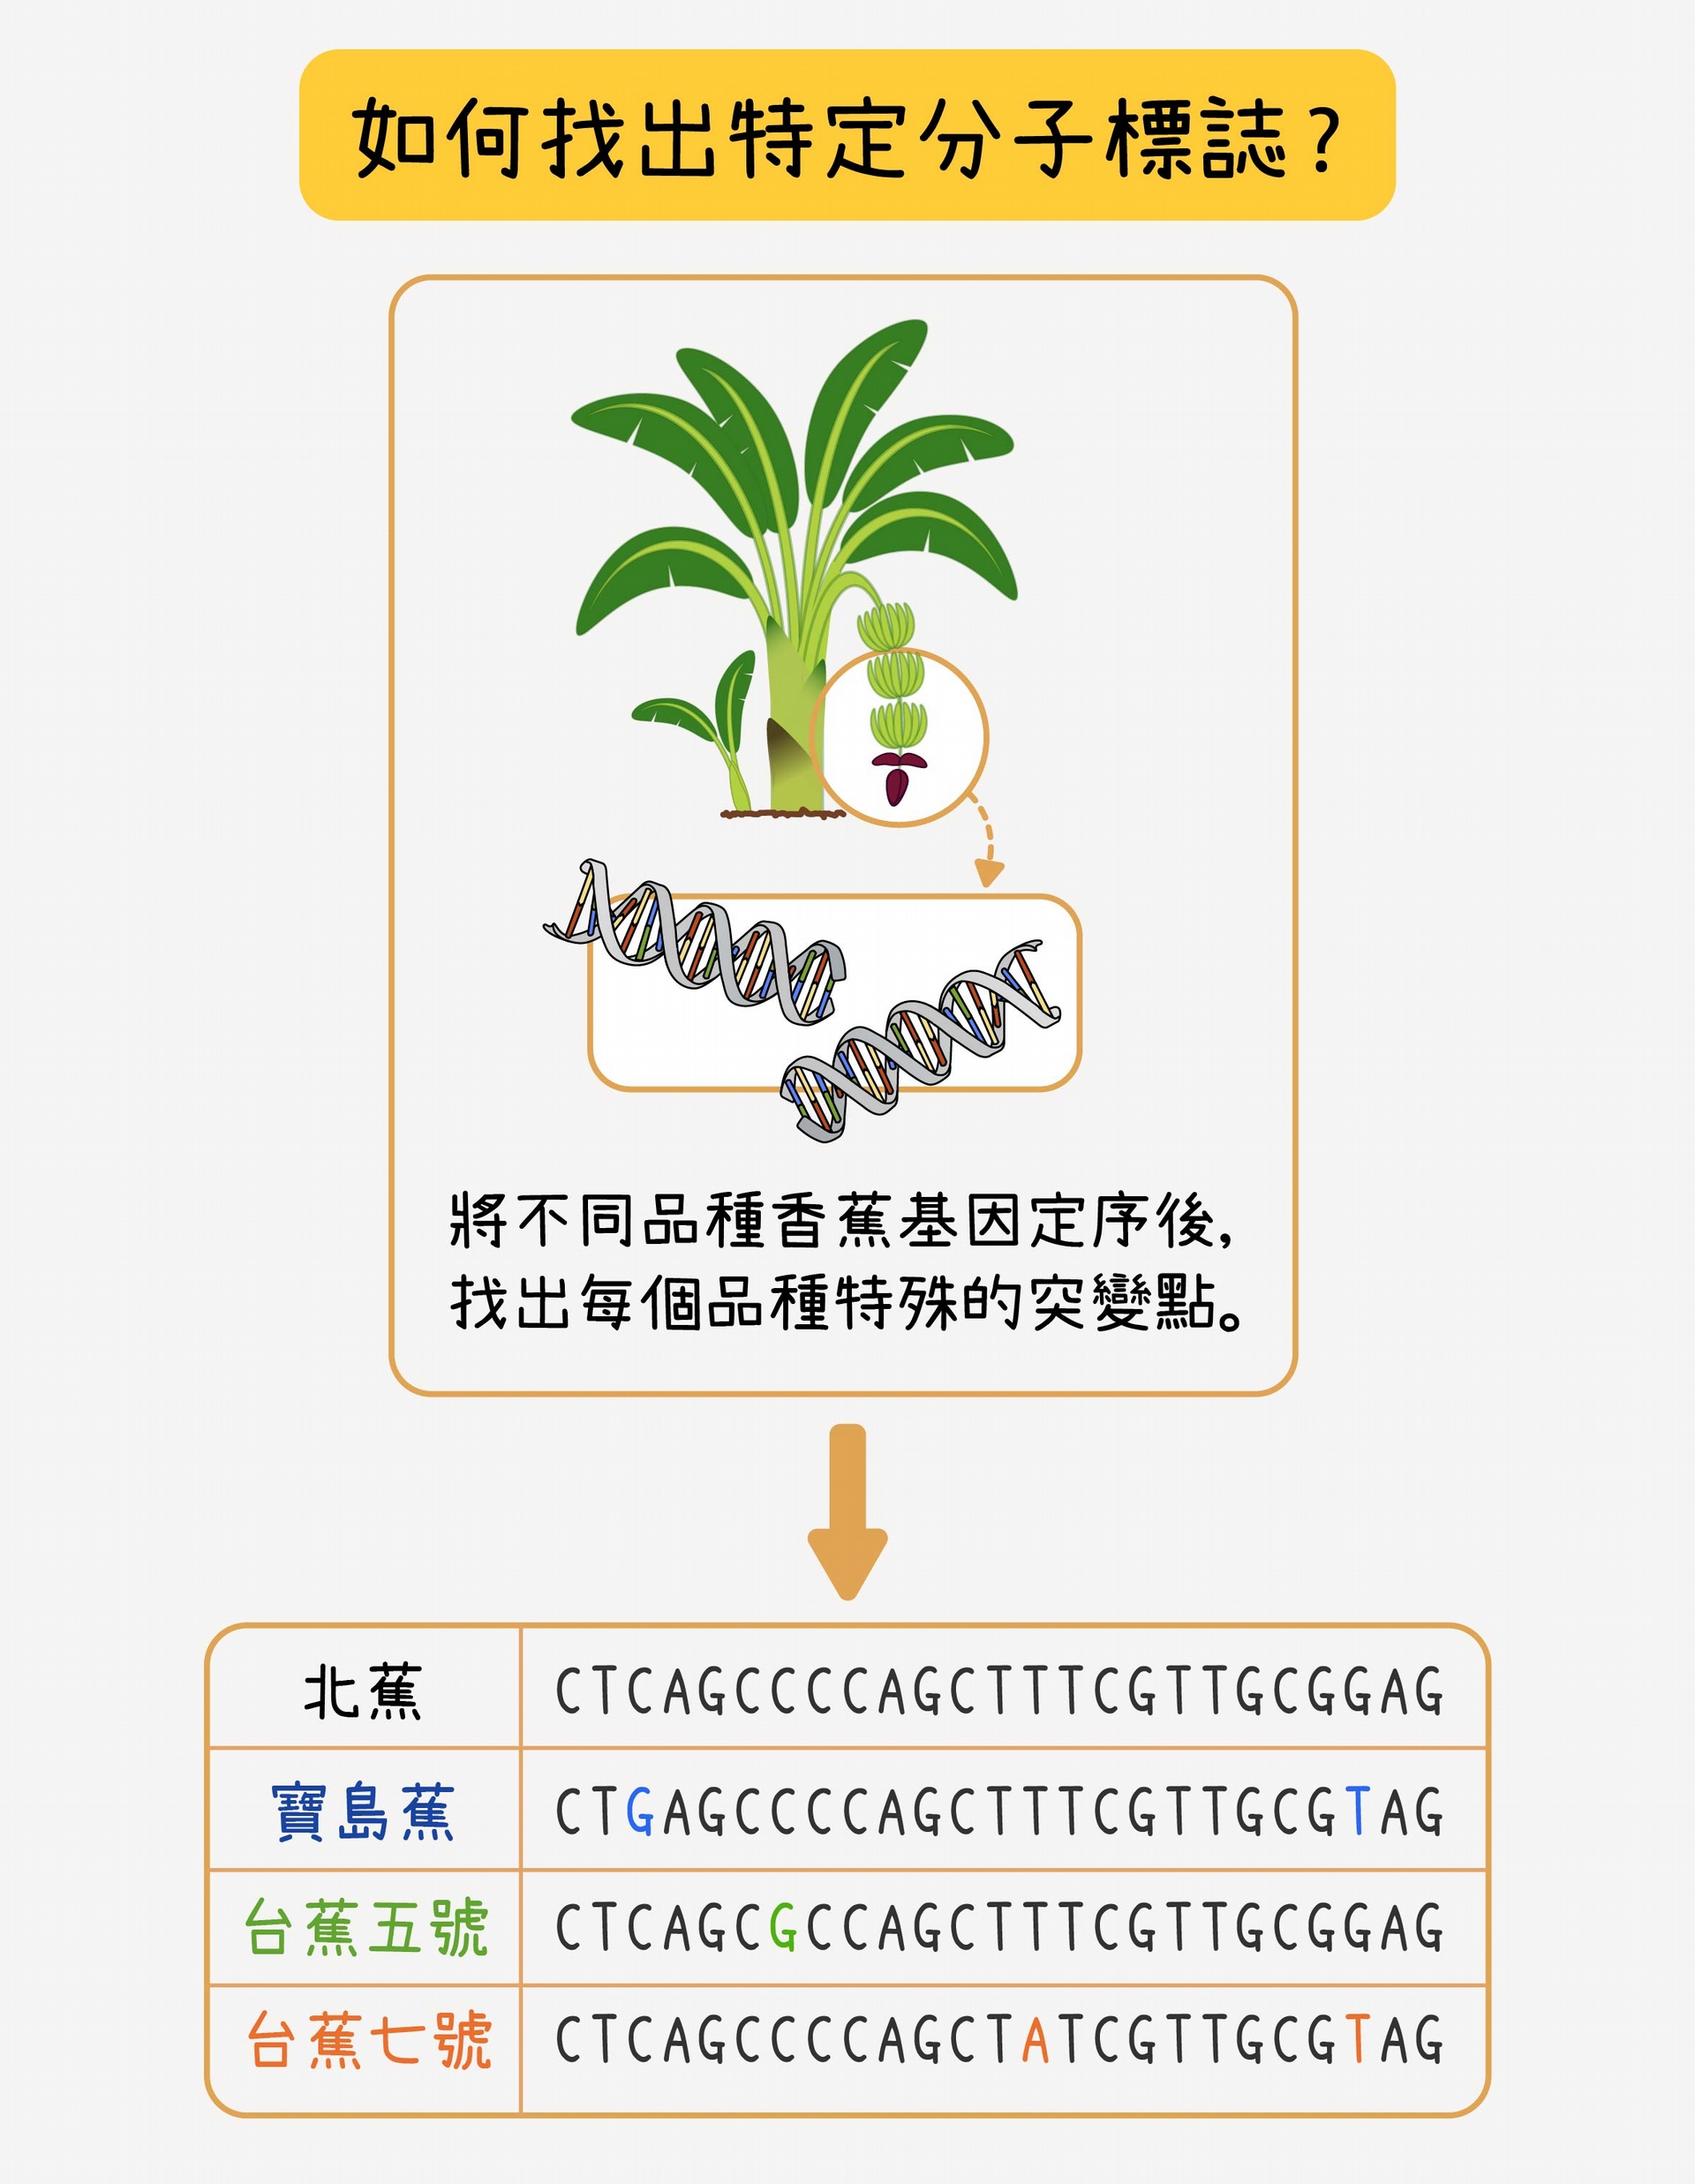 定序之後，比對寶島蕉與北蕉的基因序列，找出不一樣的地方做為寶島蕉的分子標誌候選者。再將候選的分子標誌和台蕉五號、台蕉七號及常見的栽培品種的序列比對，找出只有寶島蕉才有、其他品種都沒有的最佳分子標誌。研究團隊會為一個品種挑選大量分子標誌，再三確認，以確保可信度。 資料來源│蘇柏諺 (陳荷明實驗室) 圖說重製│林洵安 